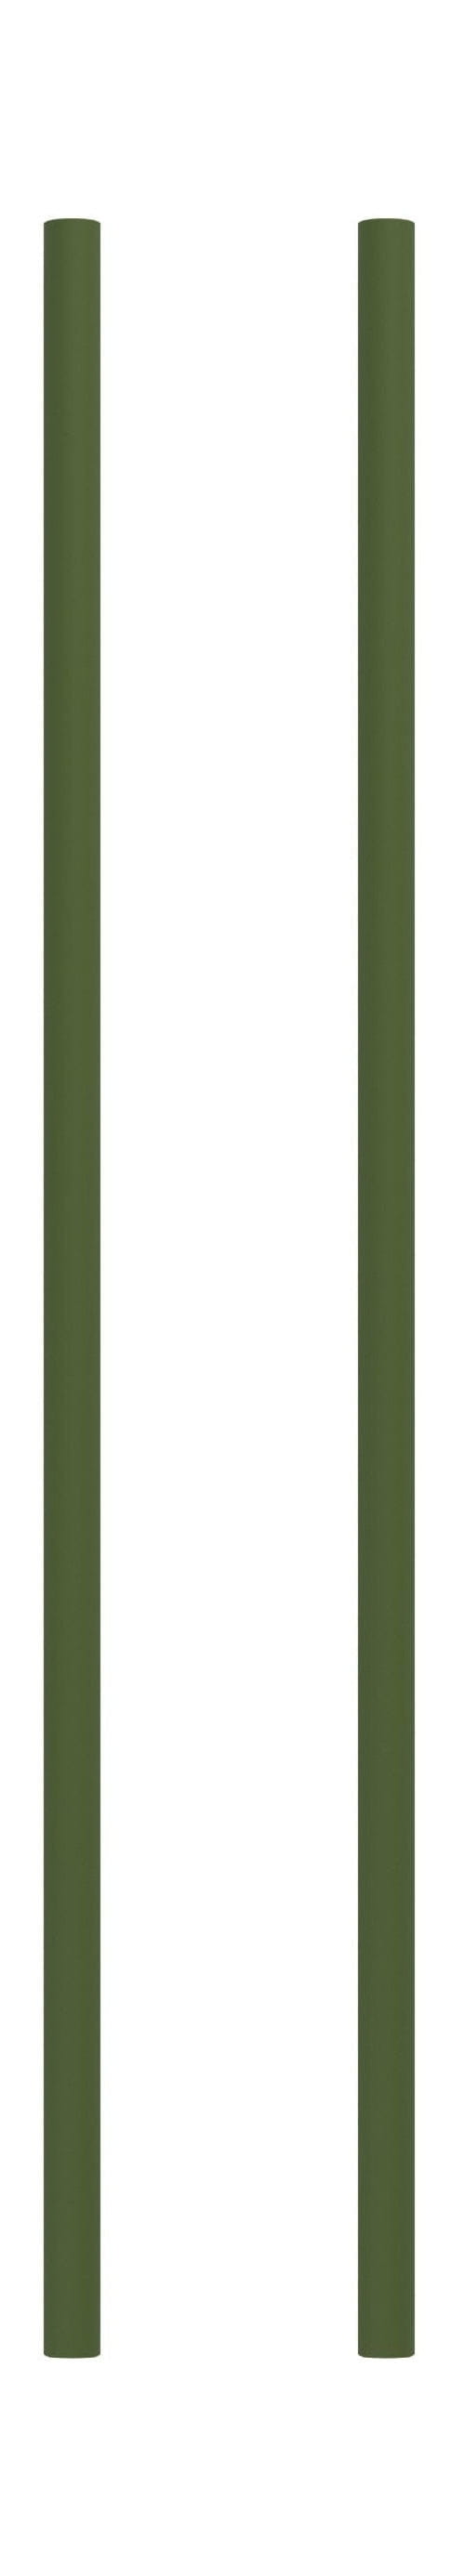 Moebe搁架系统/壁架腿65厘米，松木绿色